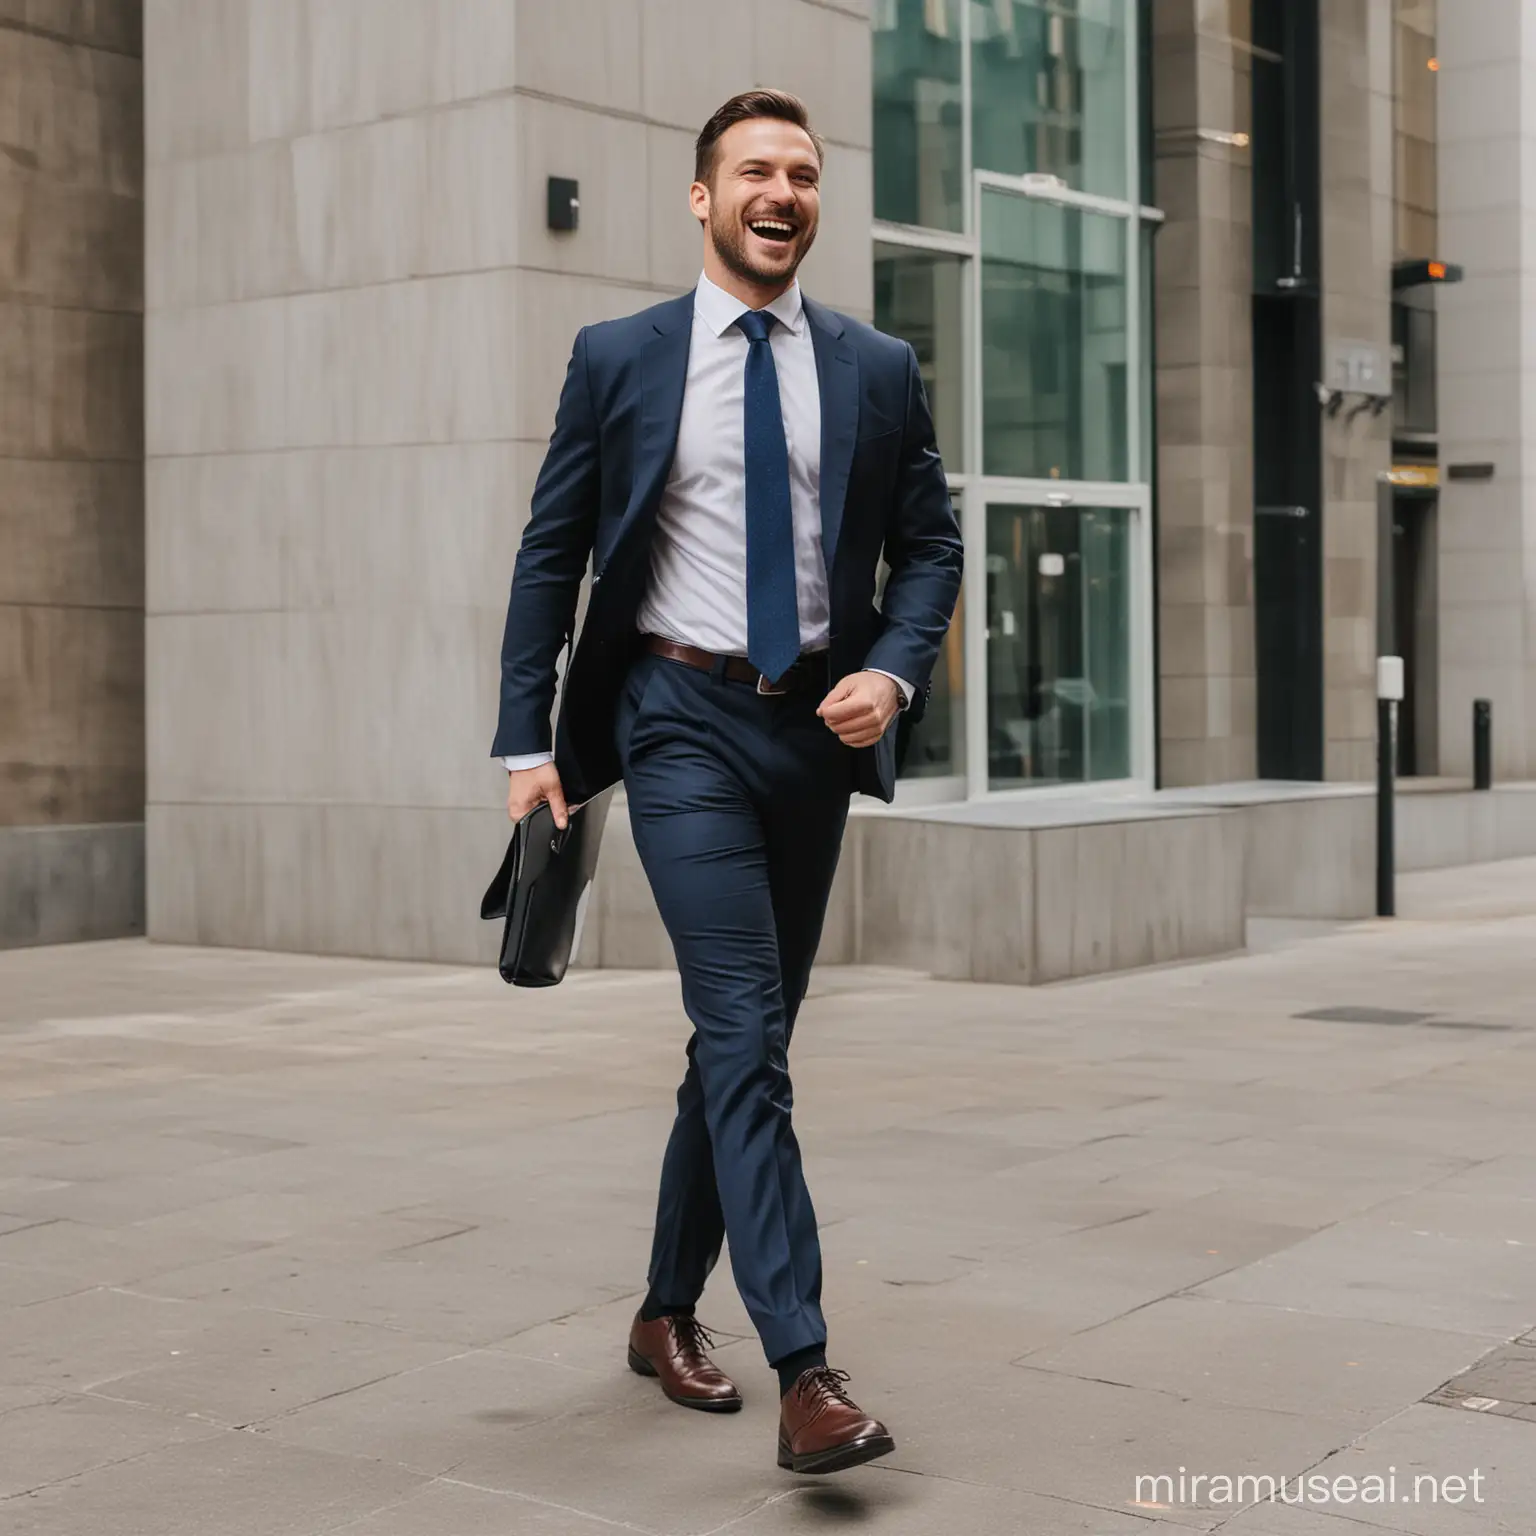 Joyful Businessman Walking to Office